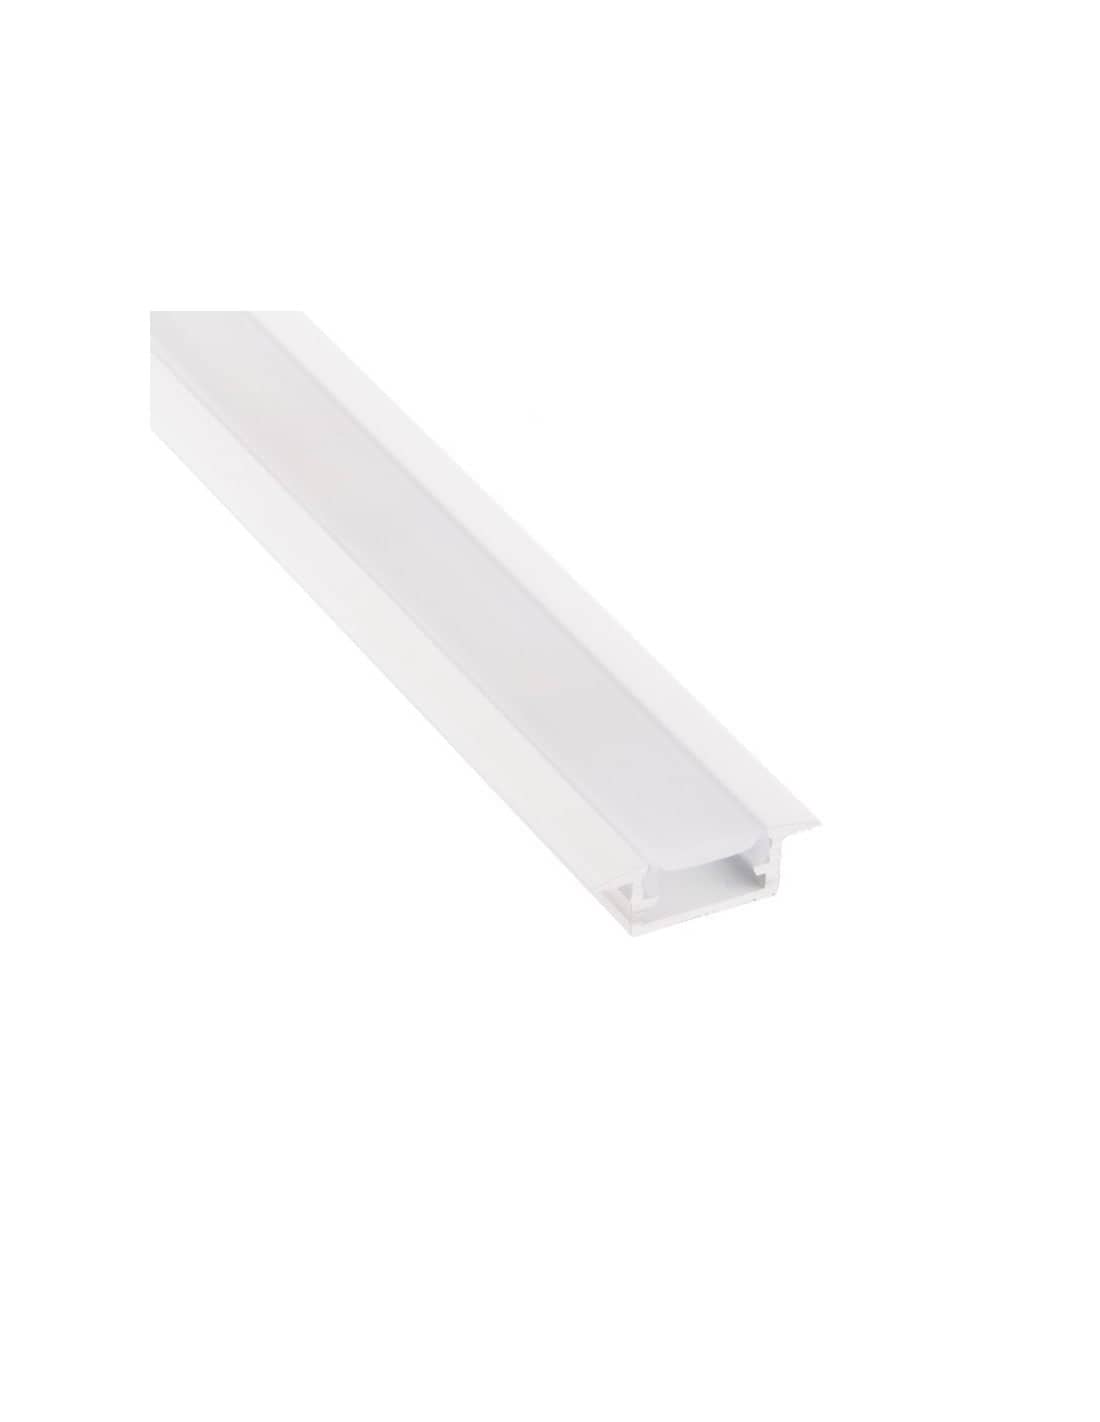 LED Profile INLINE Mini XL White/Opal   PROF-INLINEM-XL-OP-2M-B